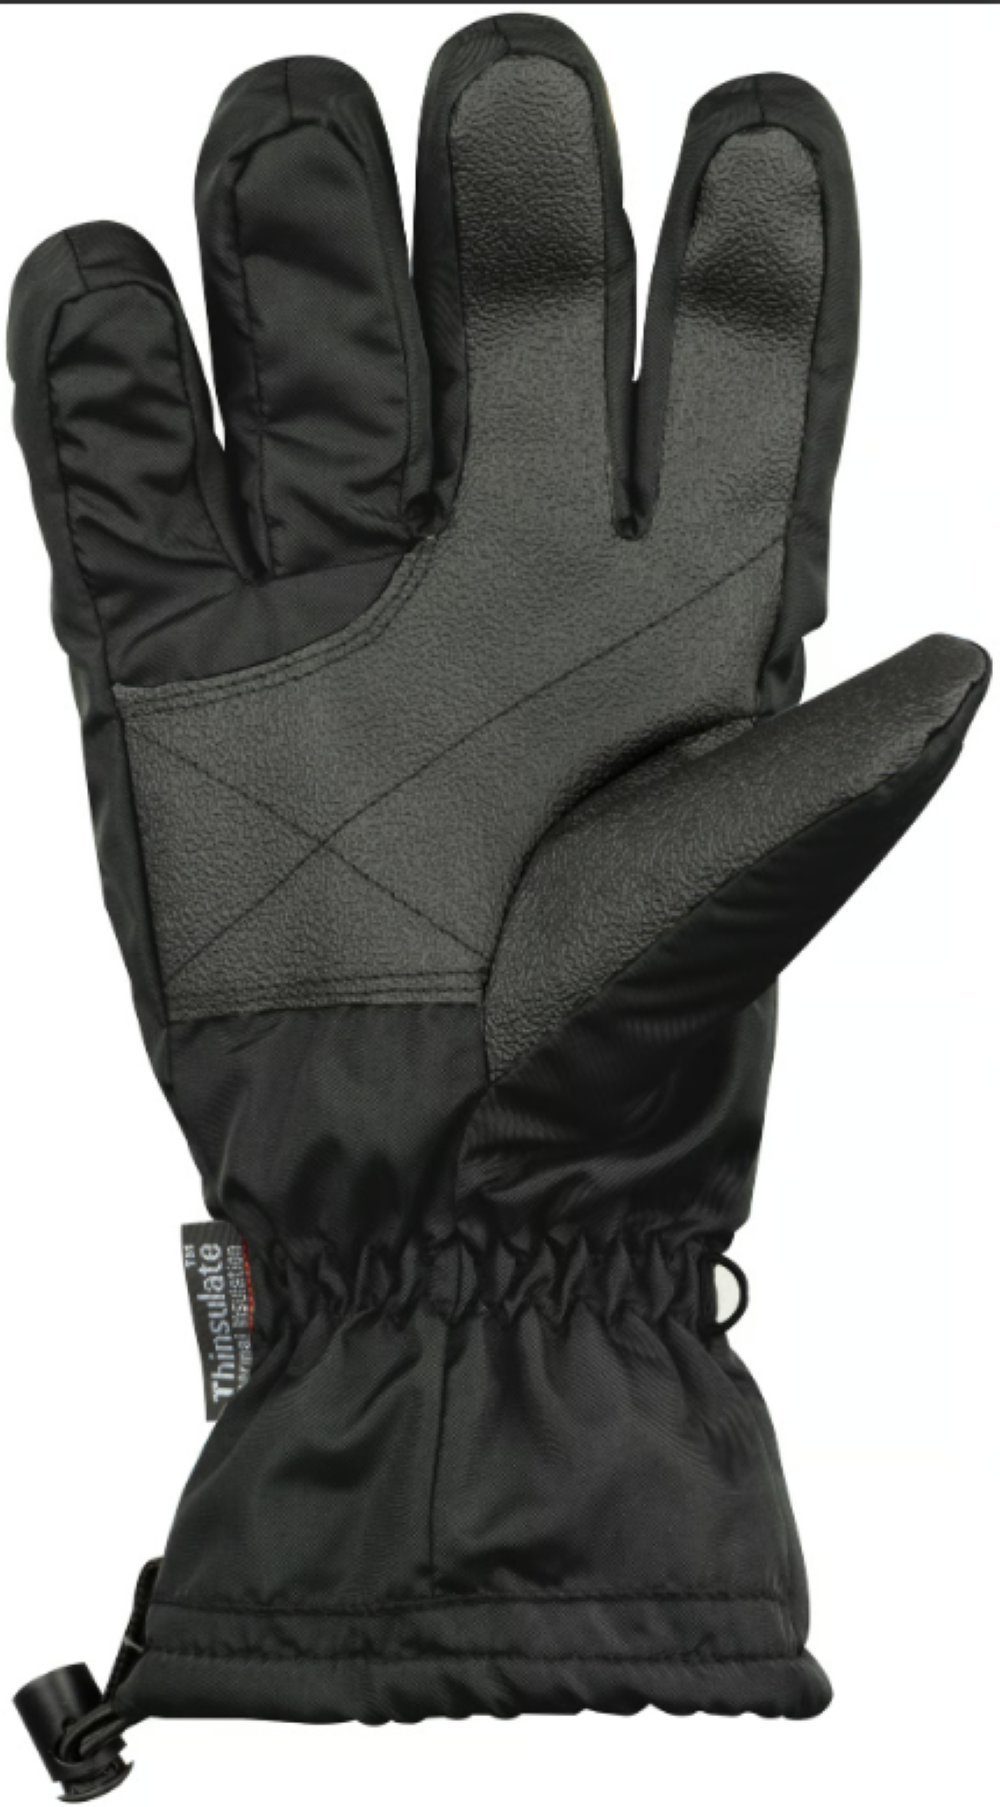 Snowboard-Handschuhe STARLING Wärme-Isolation Größe •Thinsulate 3M • 9 Herren Skihandschuhe